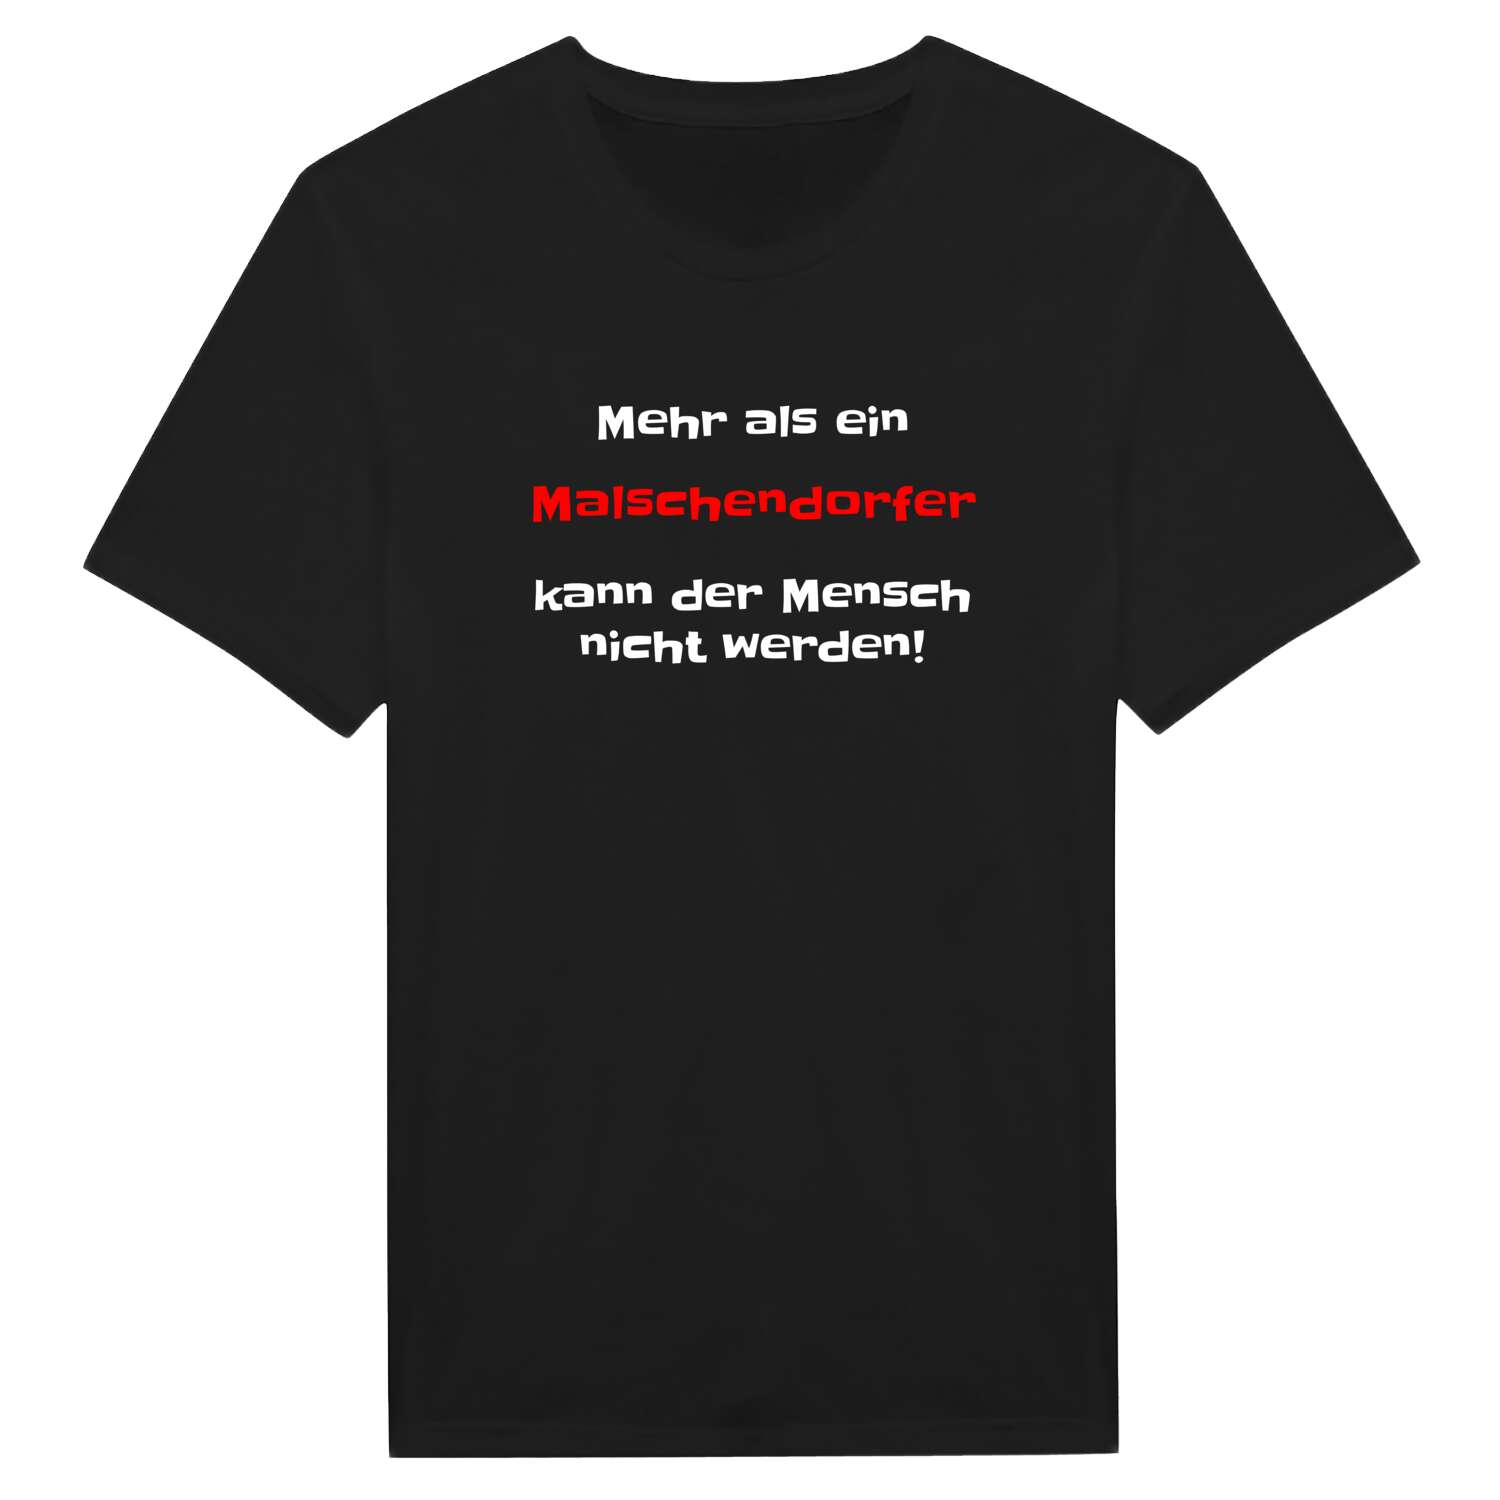 Malschendorf T-Shirt »Mehr als ein«